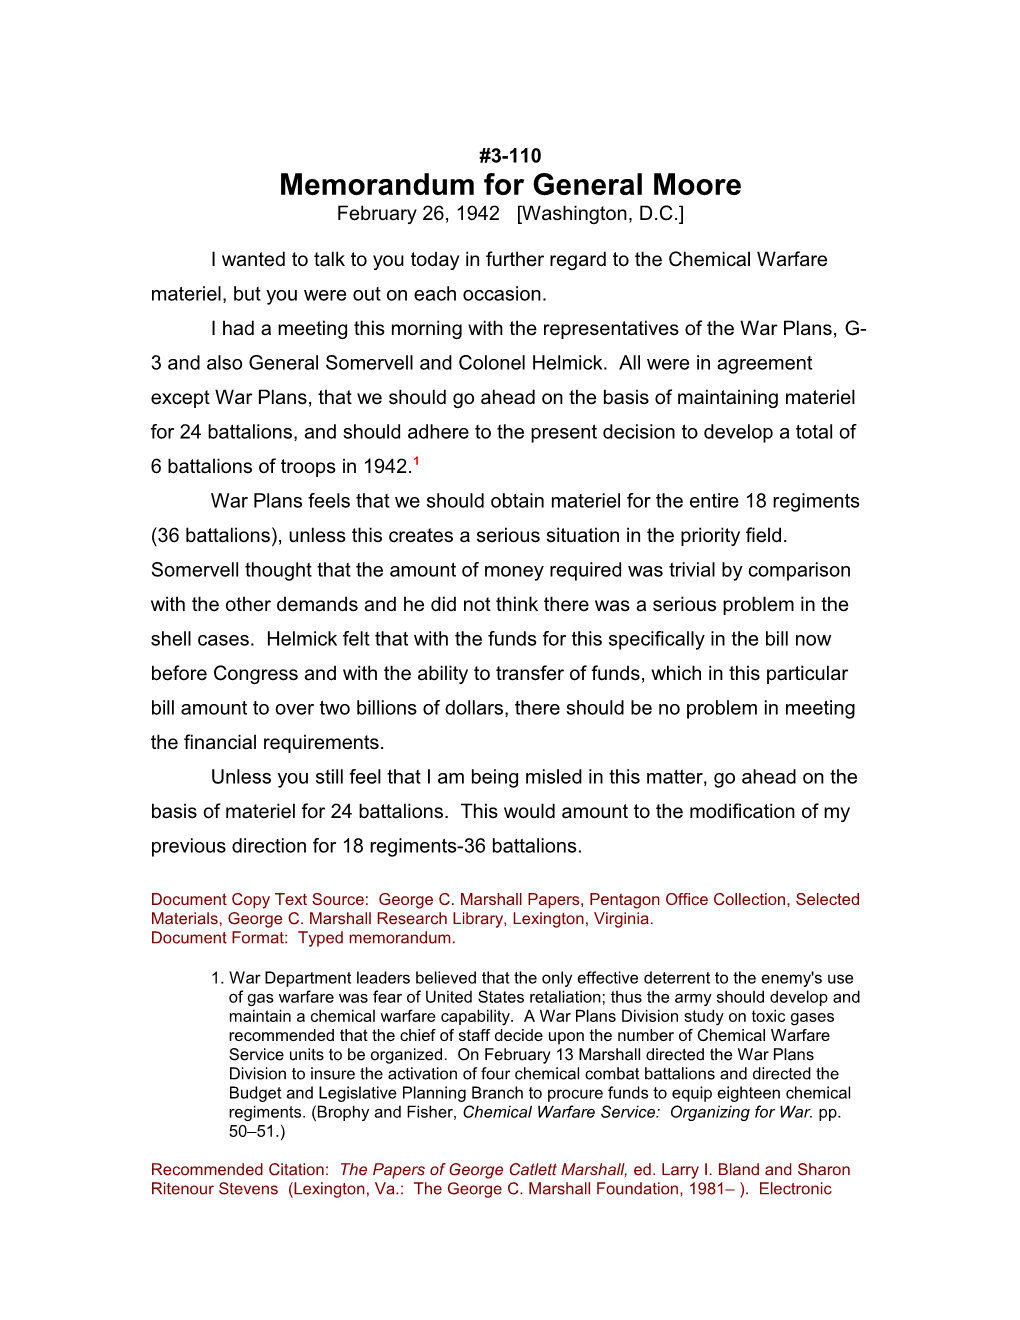 Memorandum for General Moore